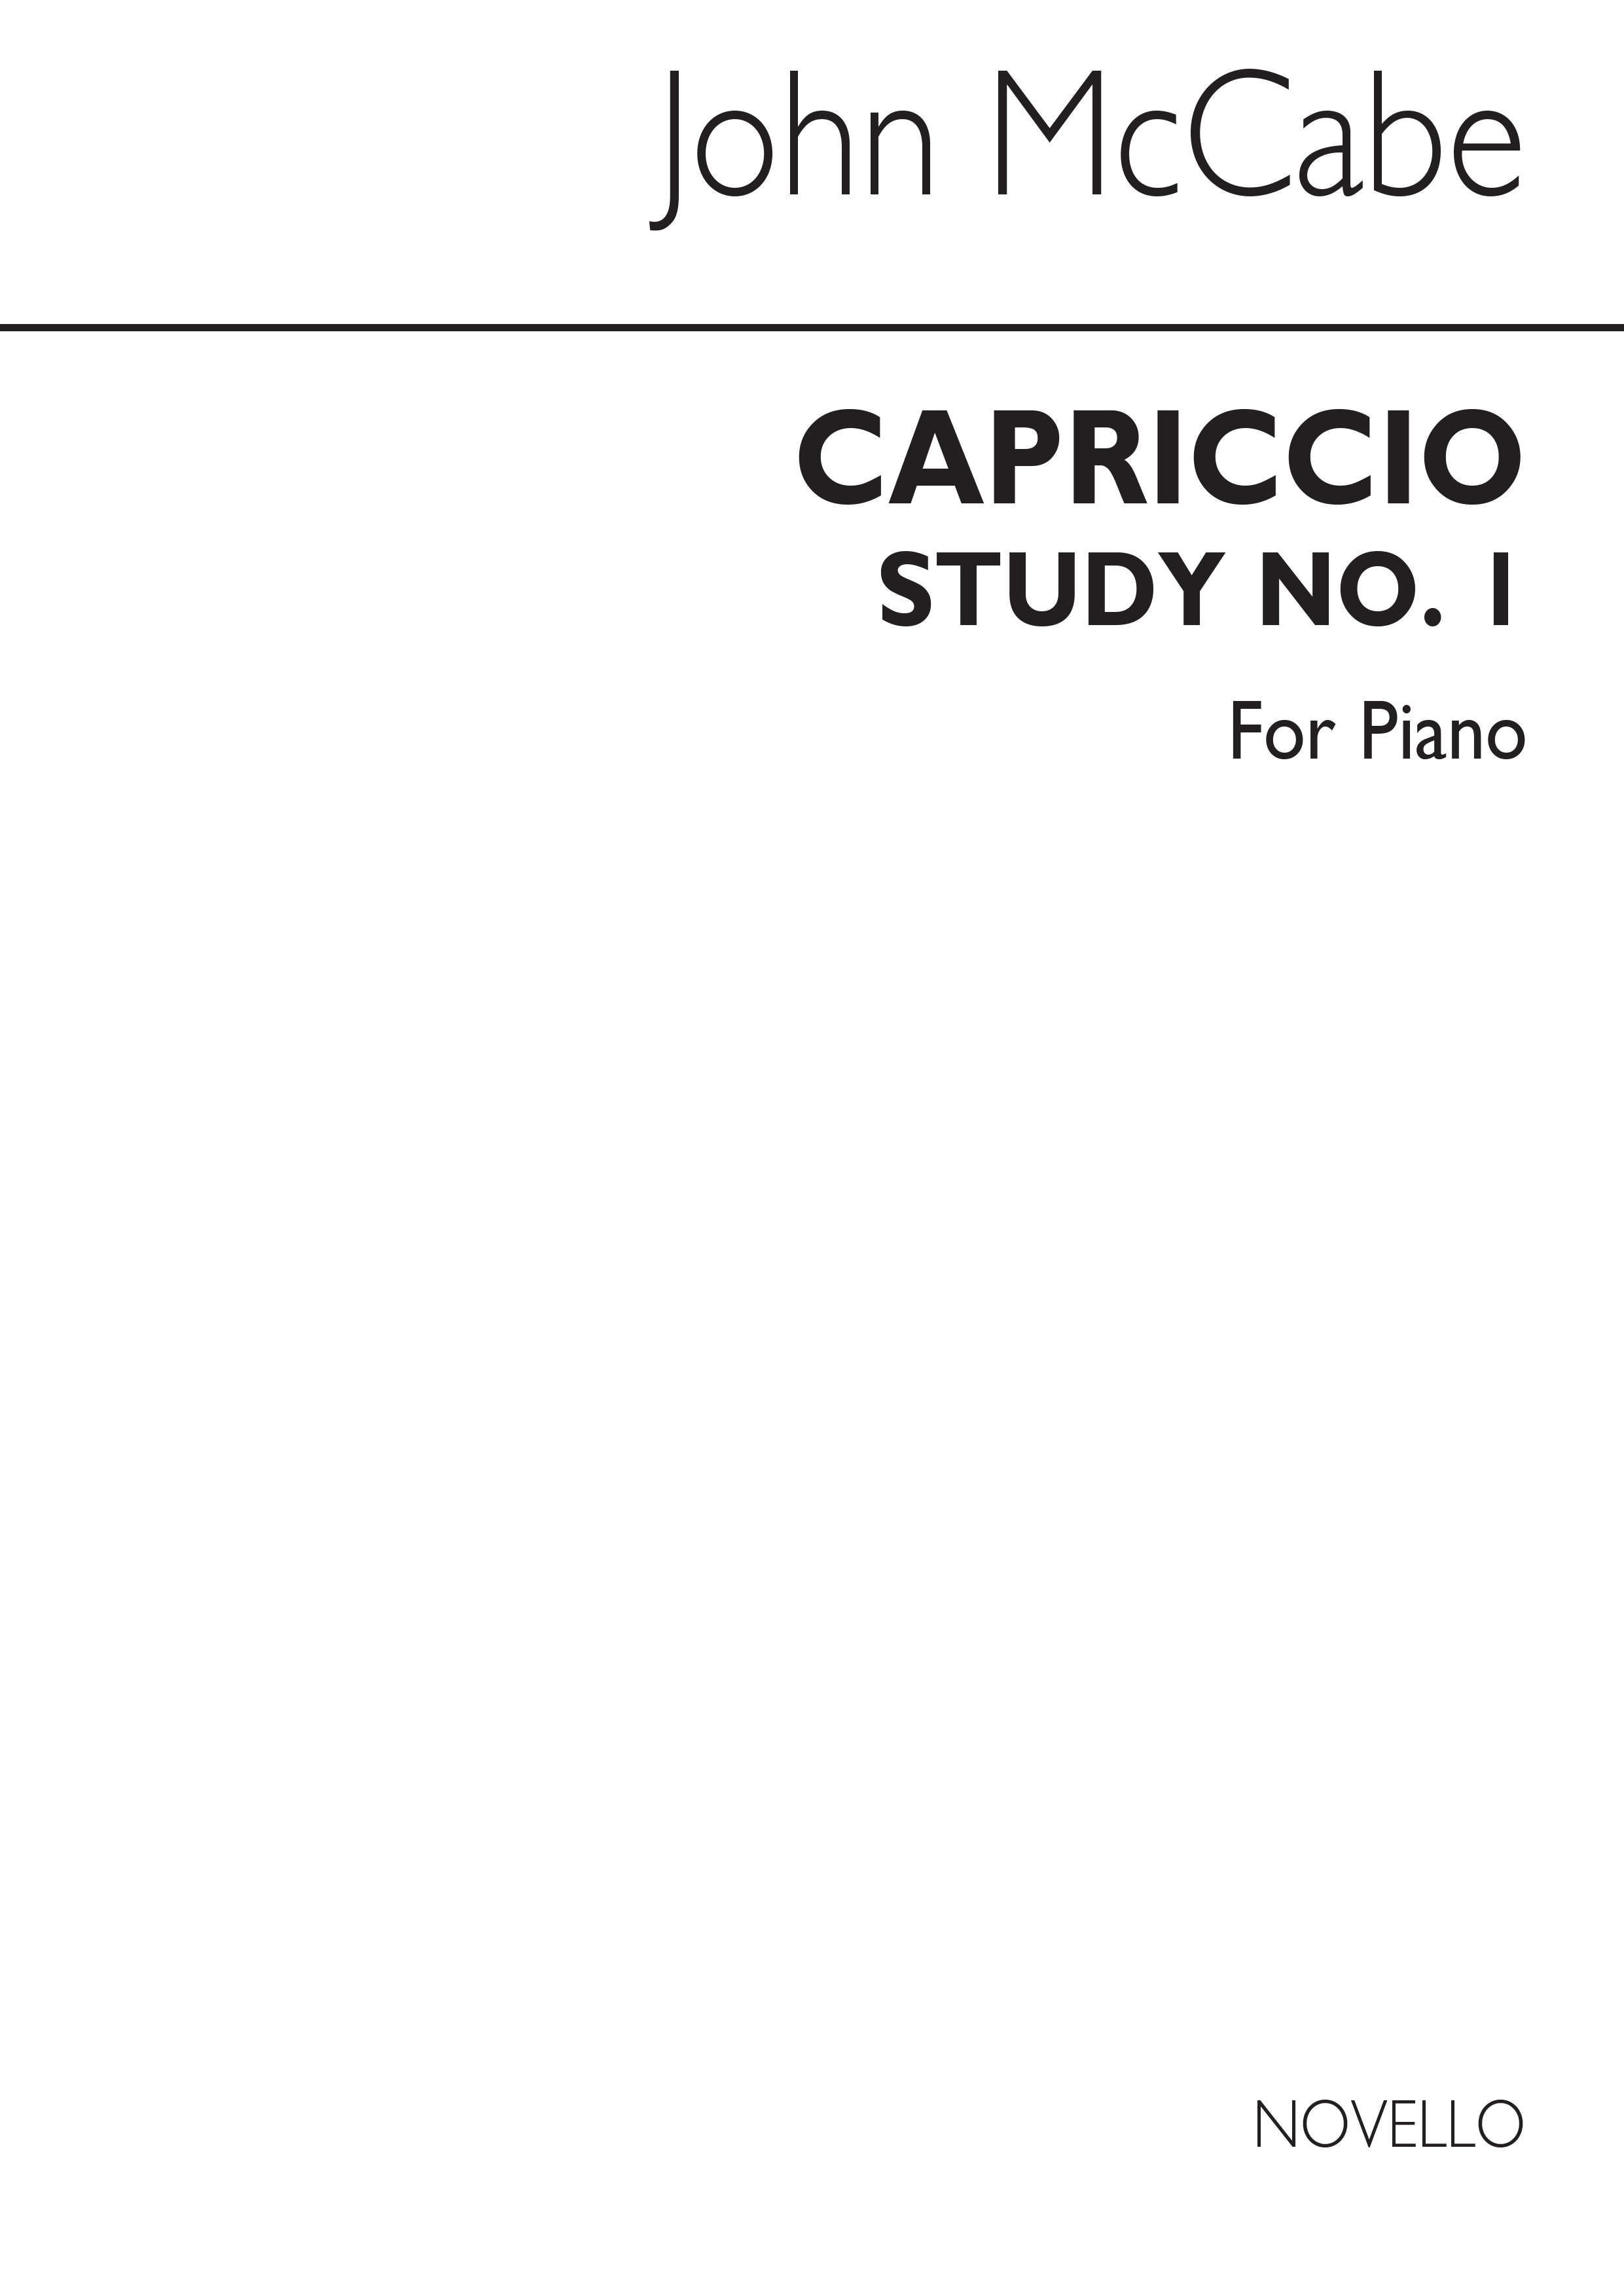 McCabe: Capriccio Study No.1 for Piano